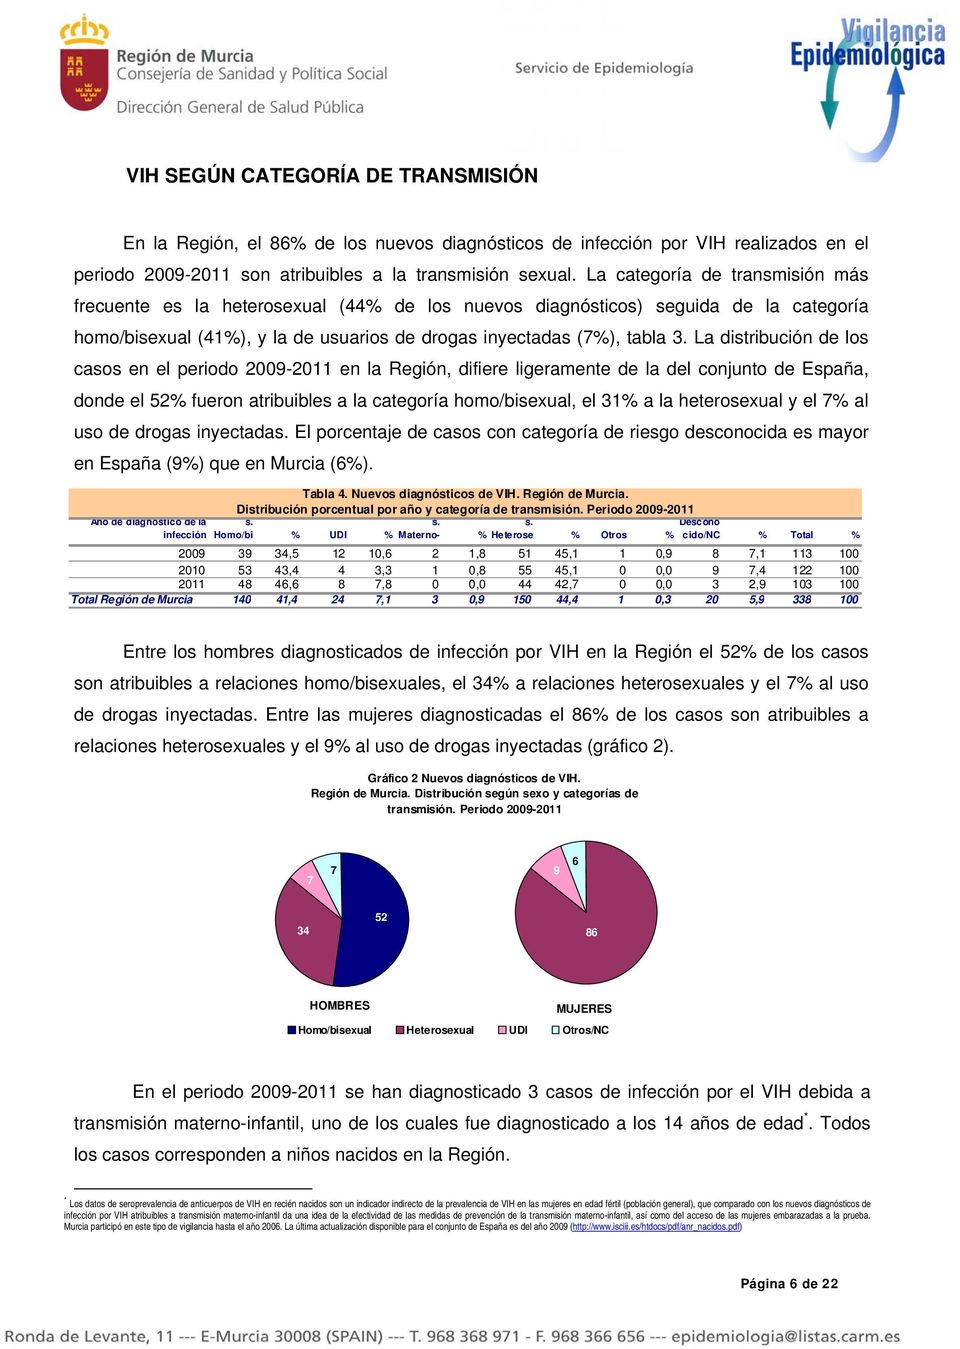 La distribución de los casos en el periodo 2009-2011 en la Región, difiere ligeramente de la del conjunto de España, donde el 2% fueron atribuibles a la categoría homo/bisexual, el 31% a la